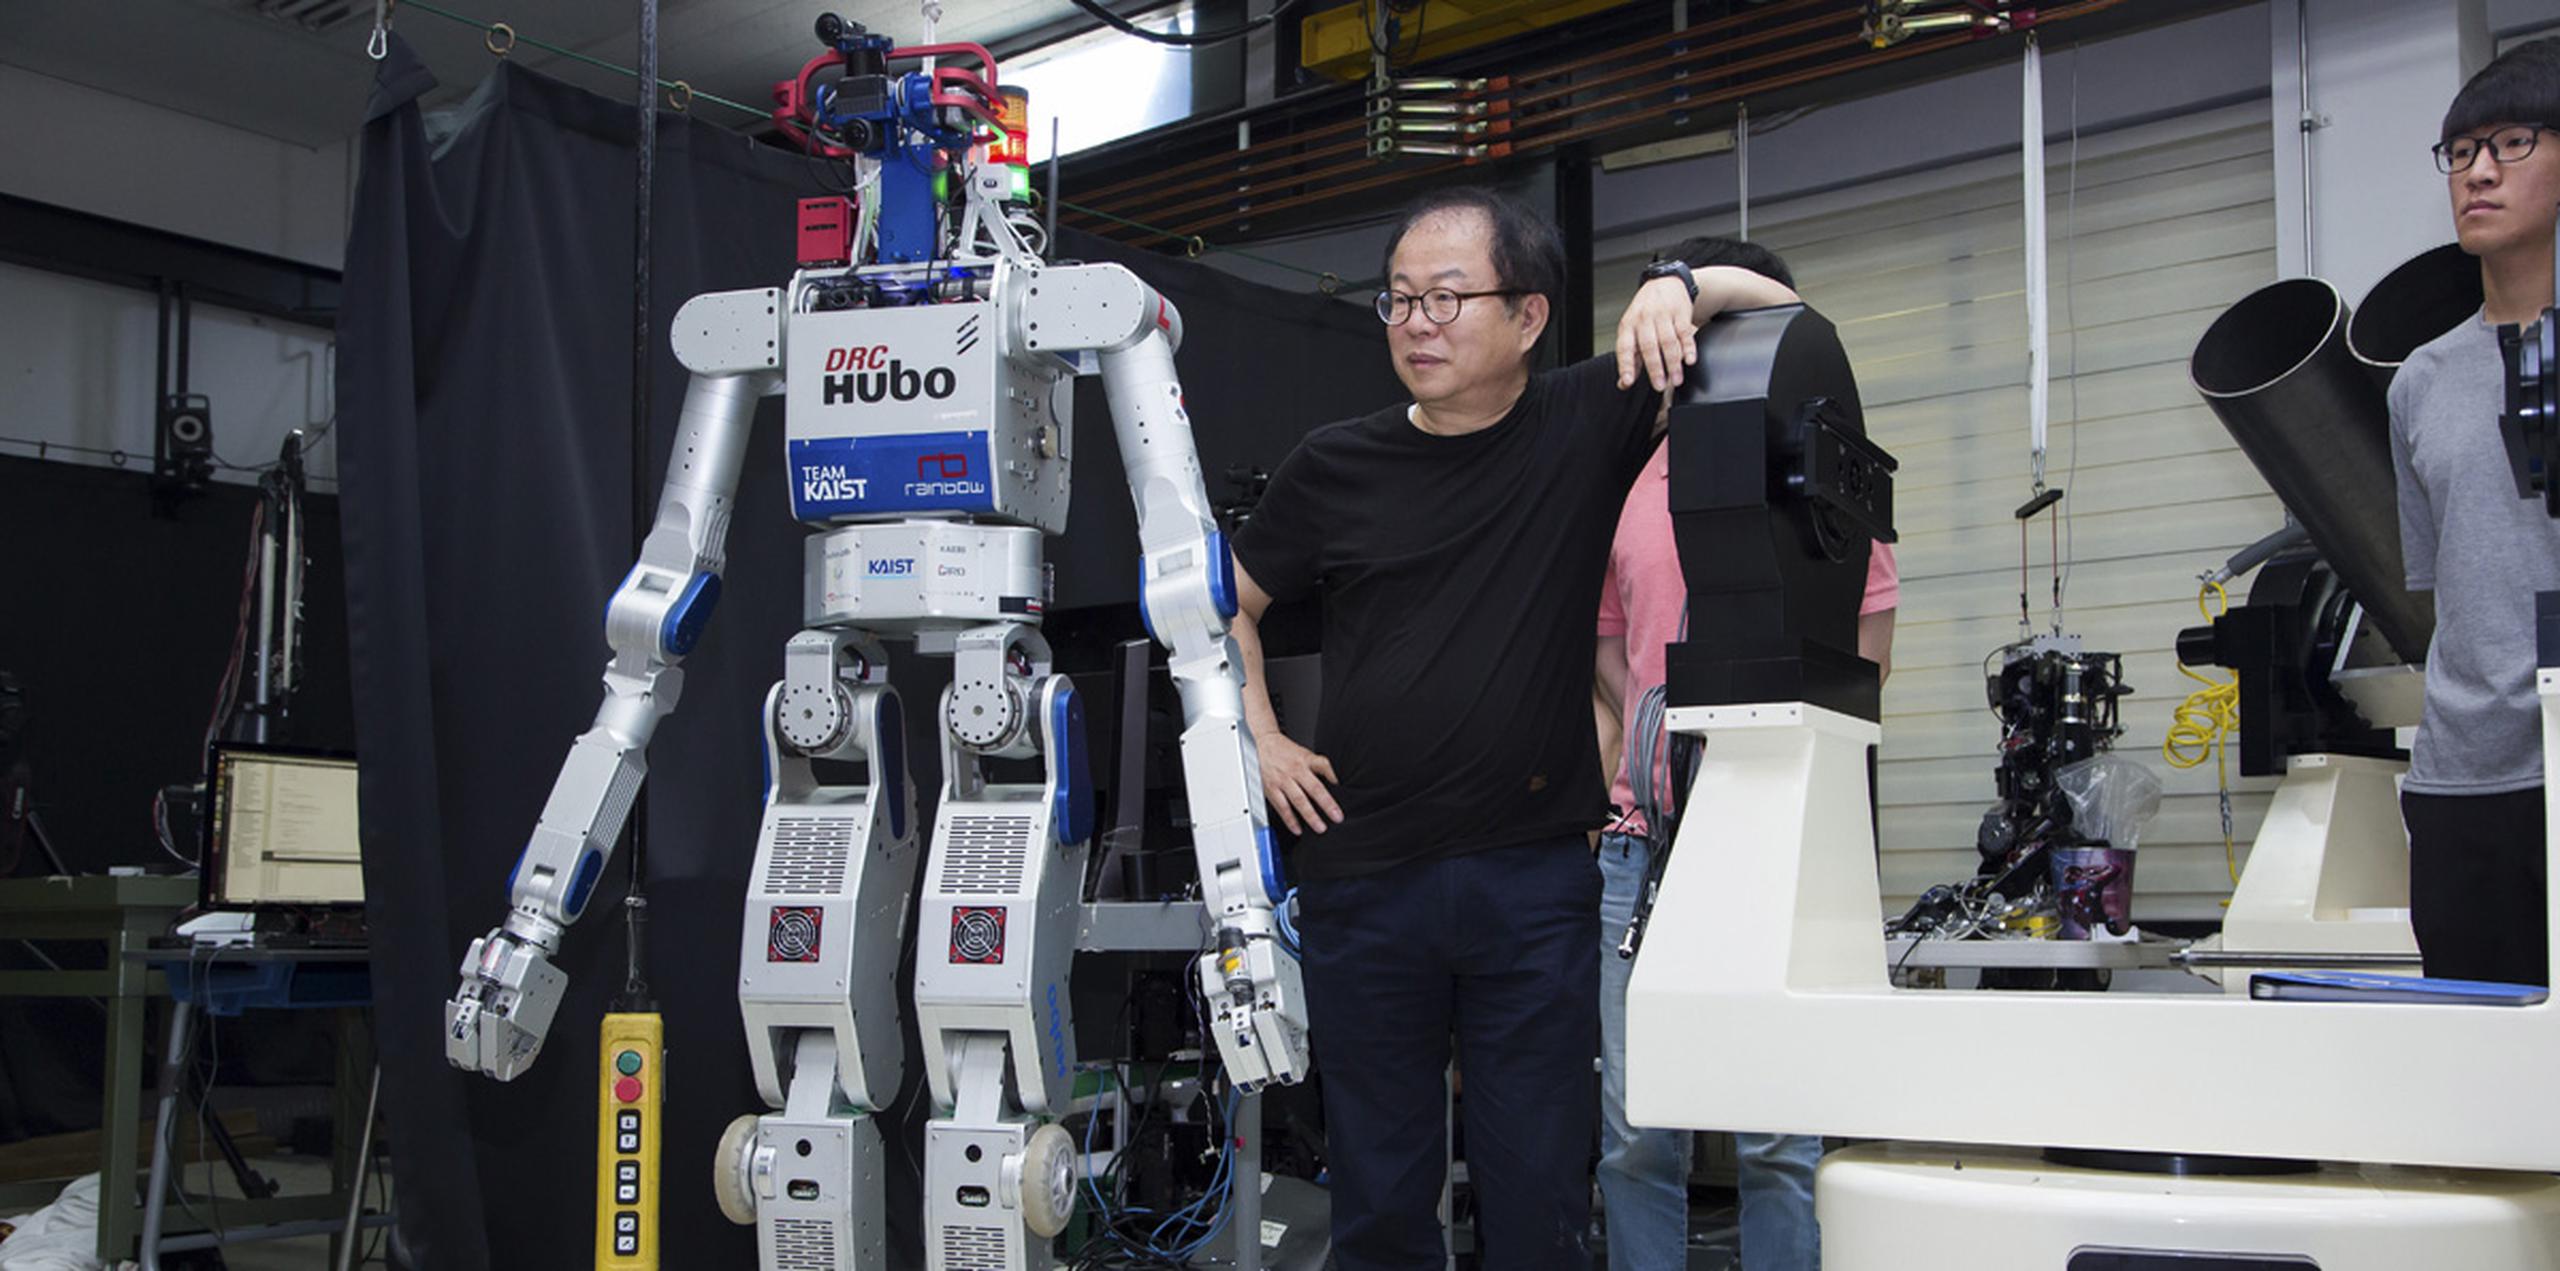 Hubo, cuya primera versión 'nació' hace doce años, ganó en 2015 el primer premio de robótica concedido por el Departamento de Defensa de Estados Unidos en una competición en la que participaron robots japoneses, italianos e incluso uno estadounidense desarrollado por la Agencia Espacial (NASA). (EFE)